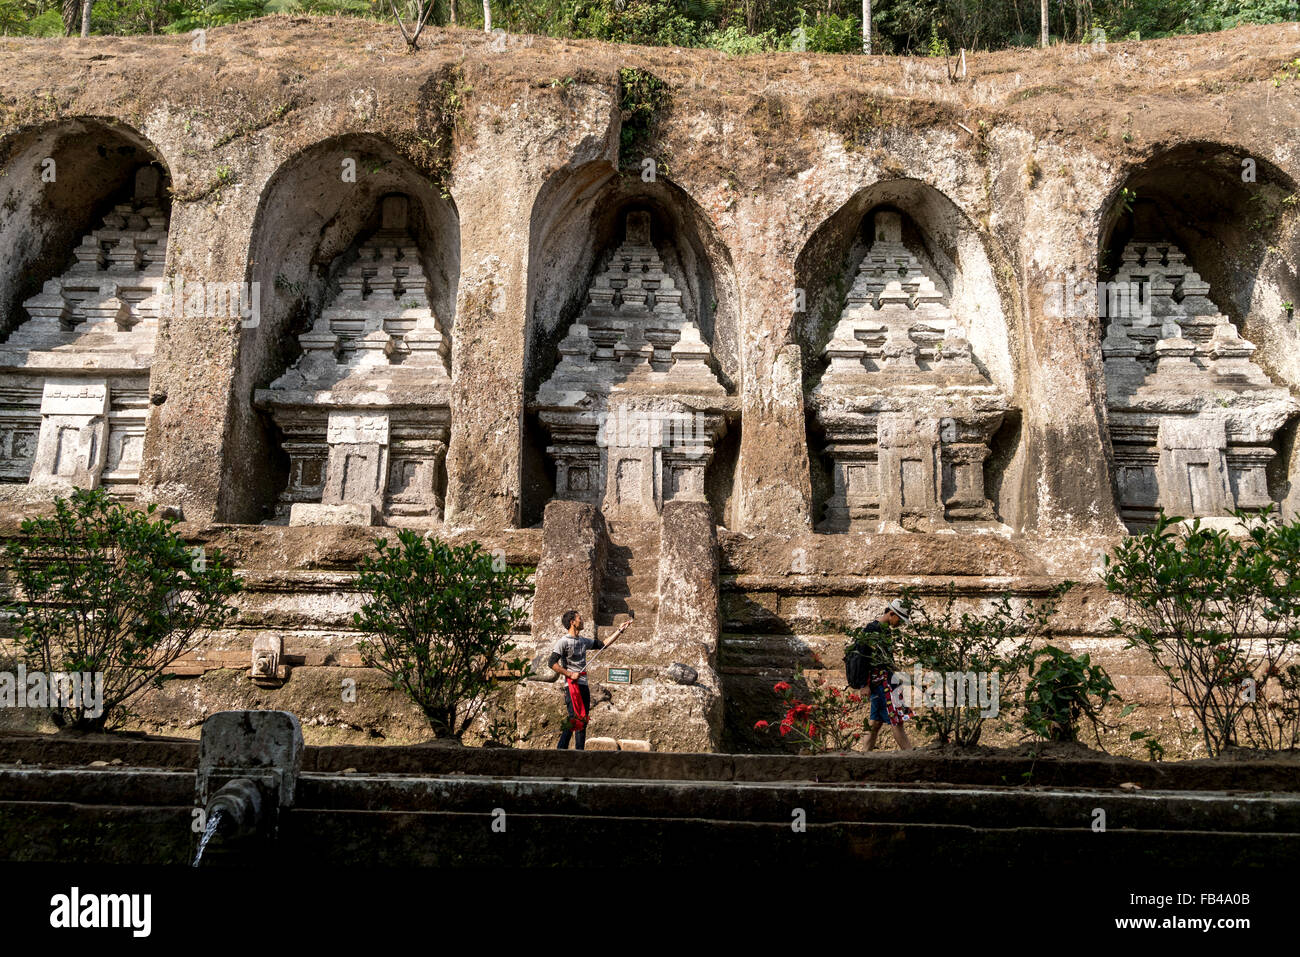 Rock-cut candi sanctuaires de Temple de Gunung Kawi, près de Tampaksiring Ubud, Bali, Indonésie Banque D'Images